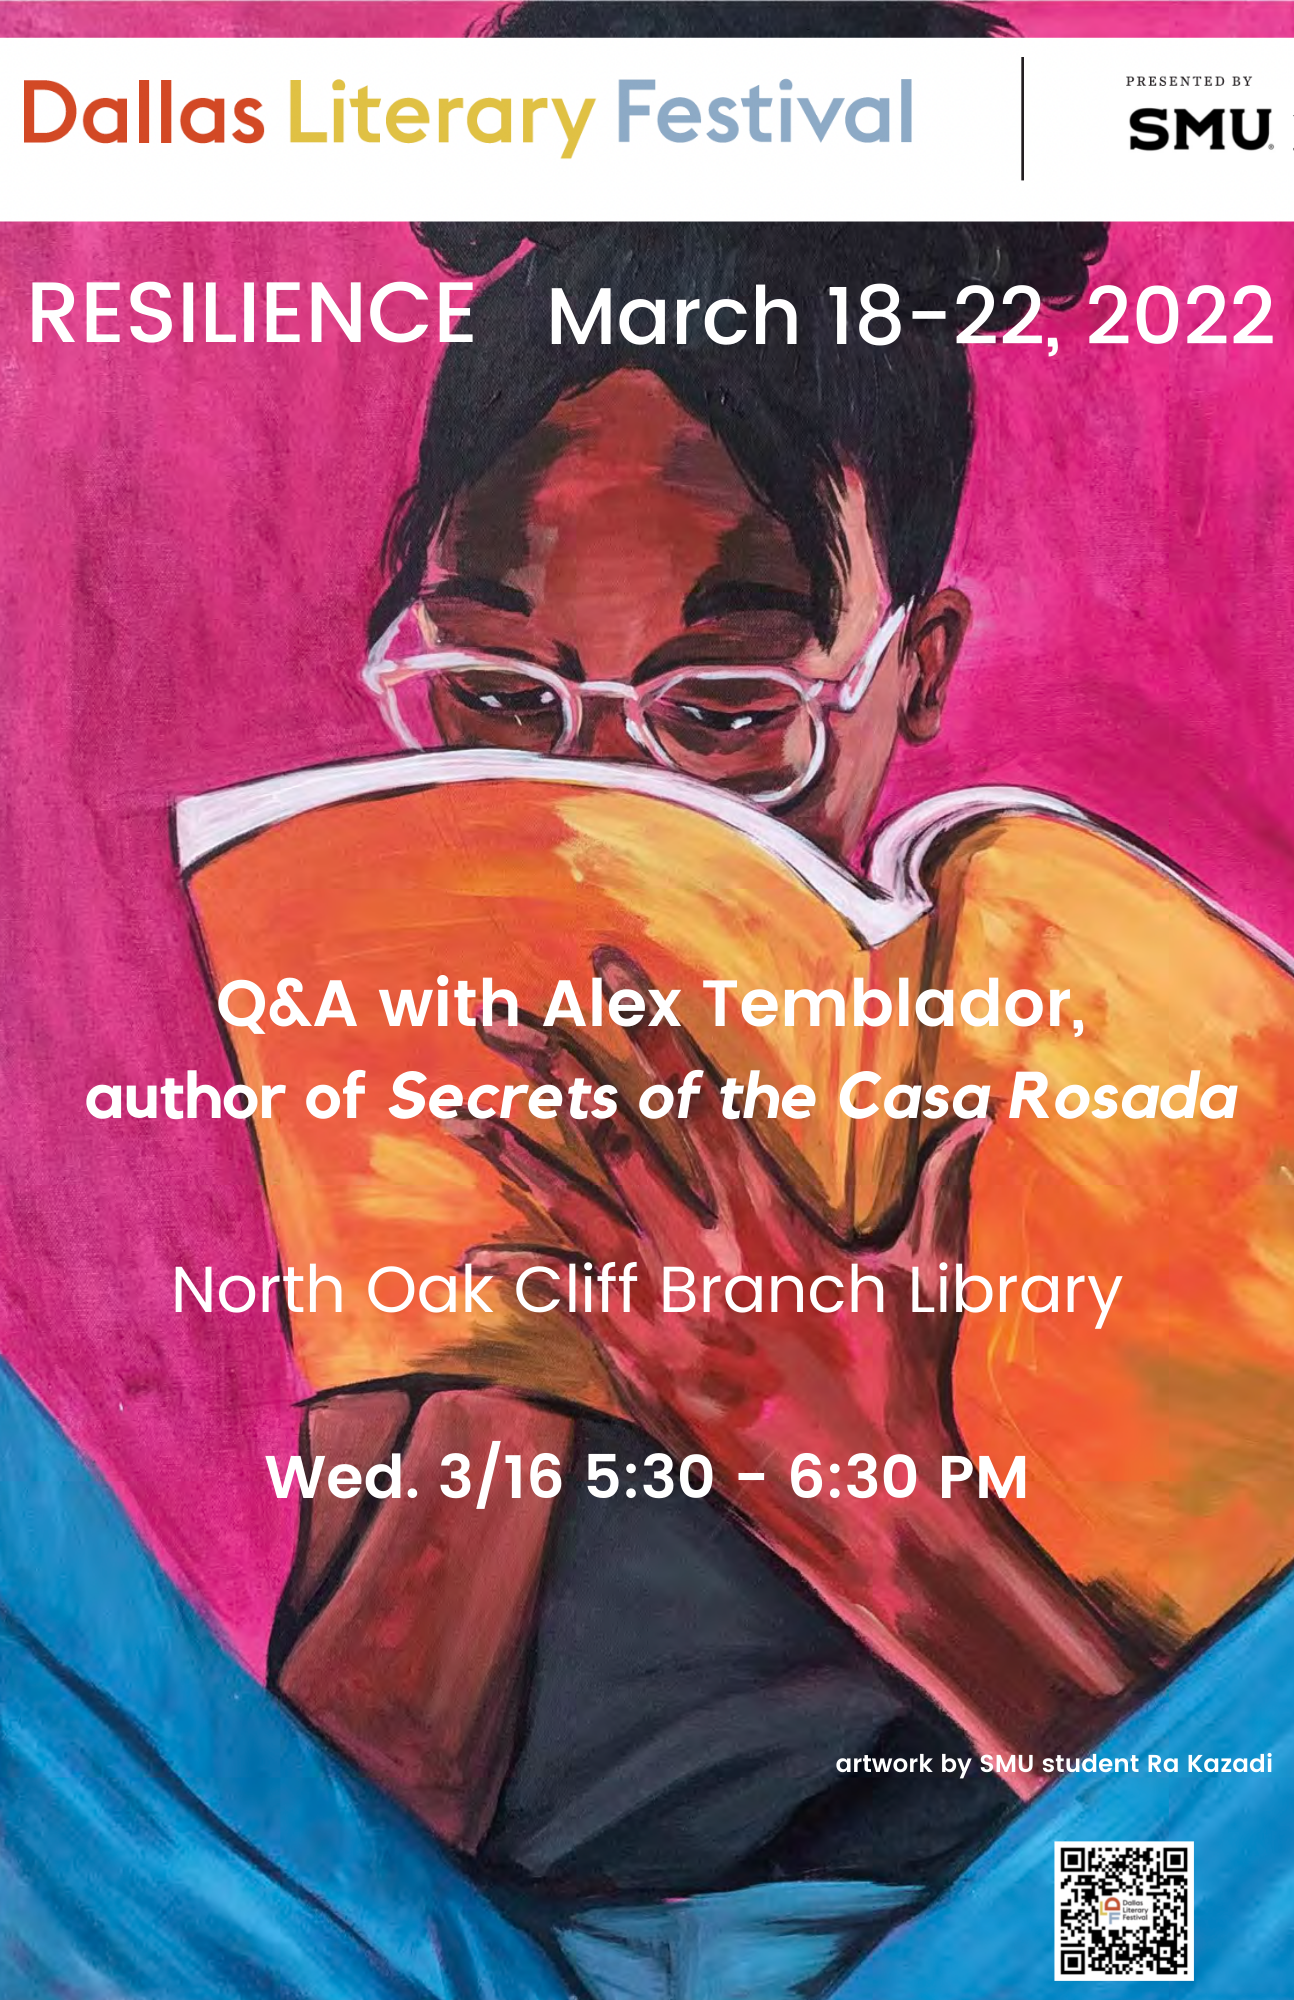 Alex Temblador author of Secrets of the Casa Rosada 